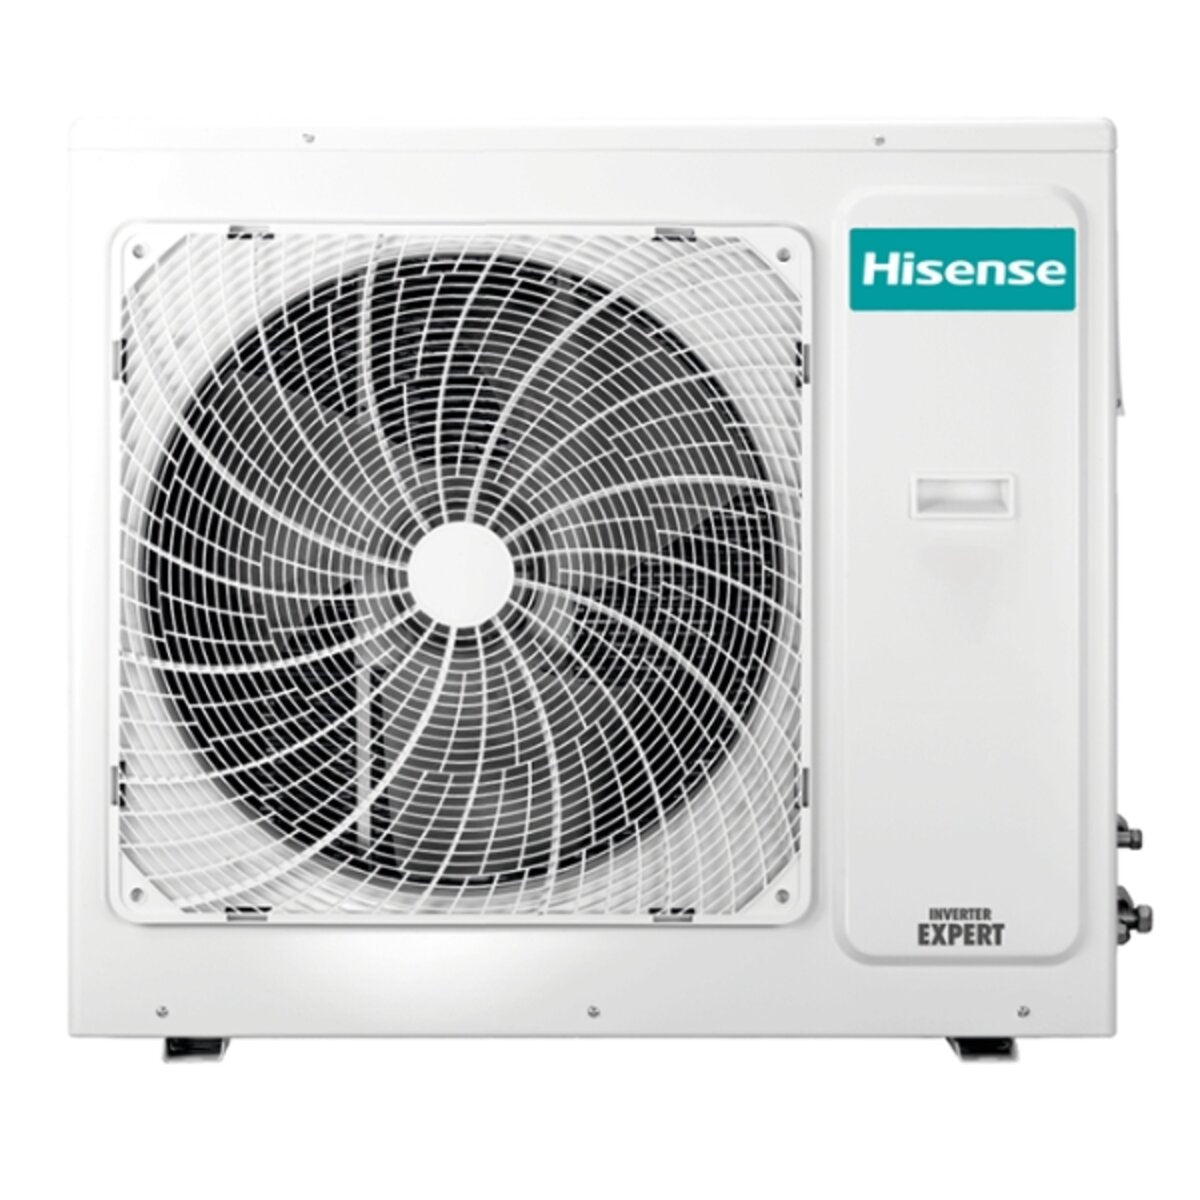 Hisense air conditioner Cassette ACT quadri split 9000+9000+12000+12000 BTU inverter A++ outdoor unit 10 kW